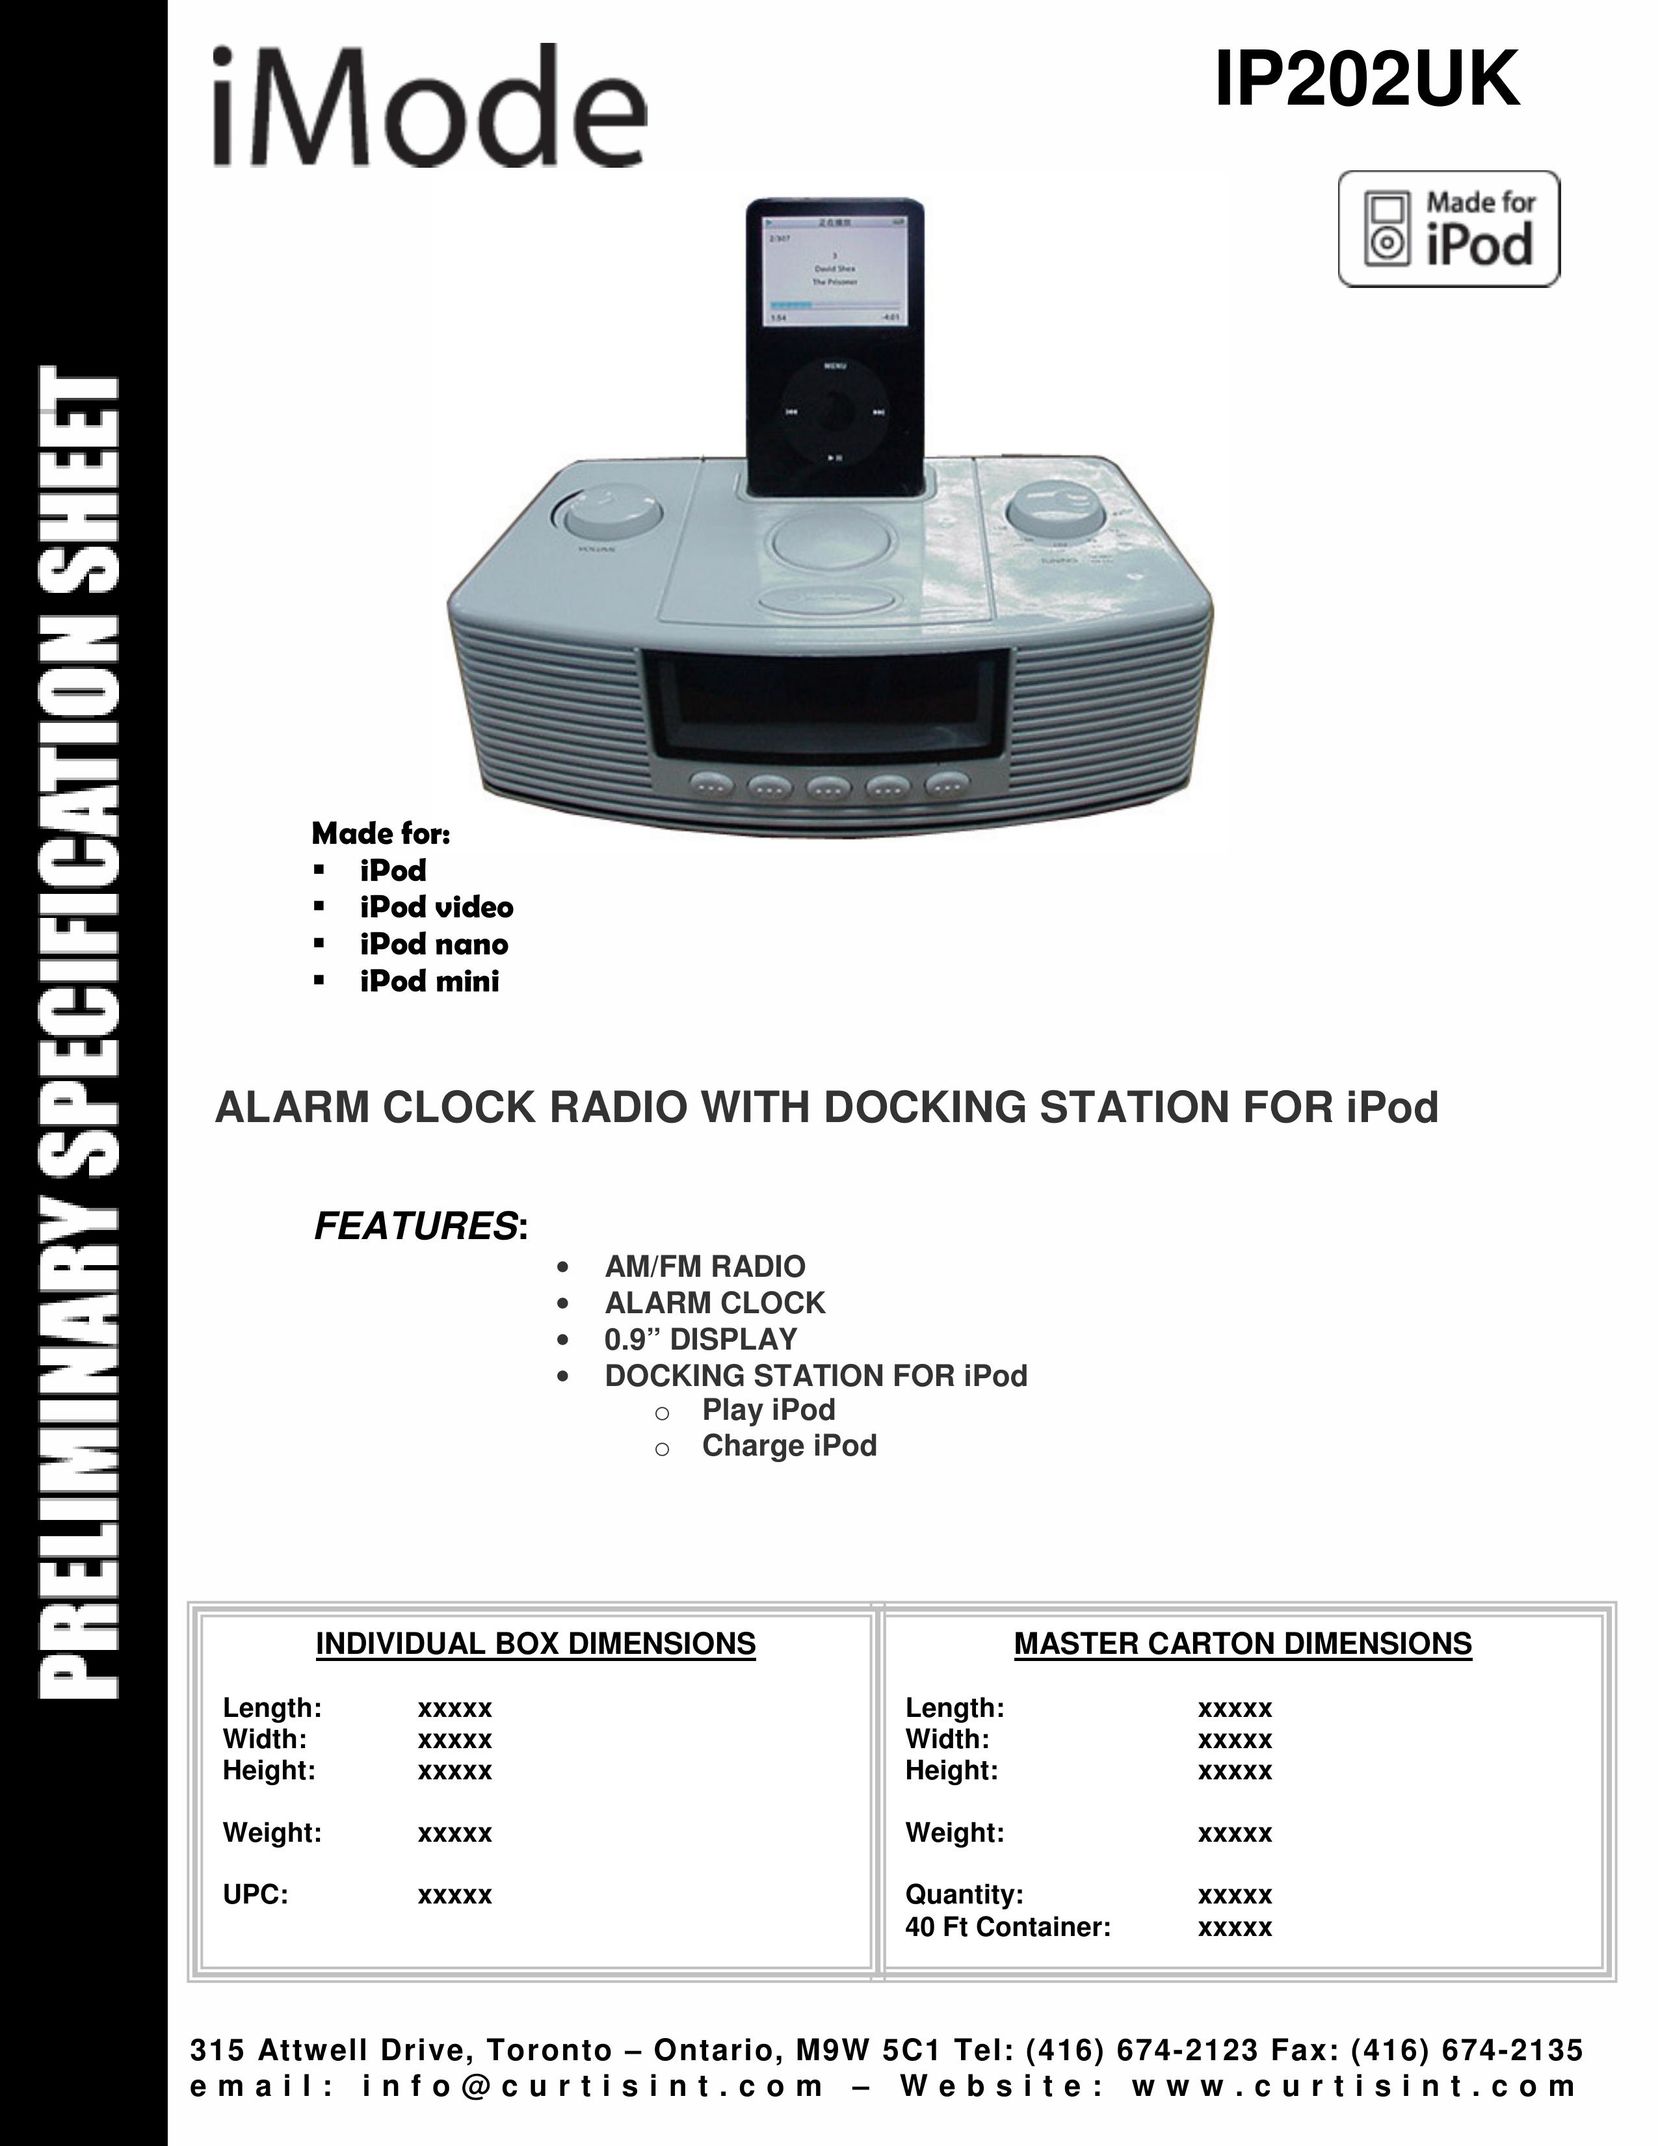 Curtis IP202UK MP3 Docking Station User Manual